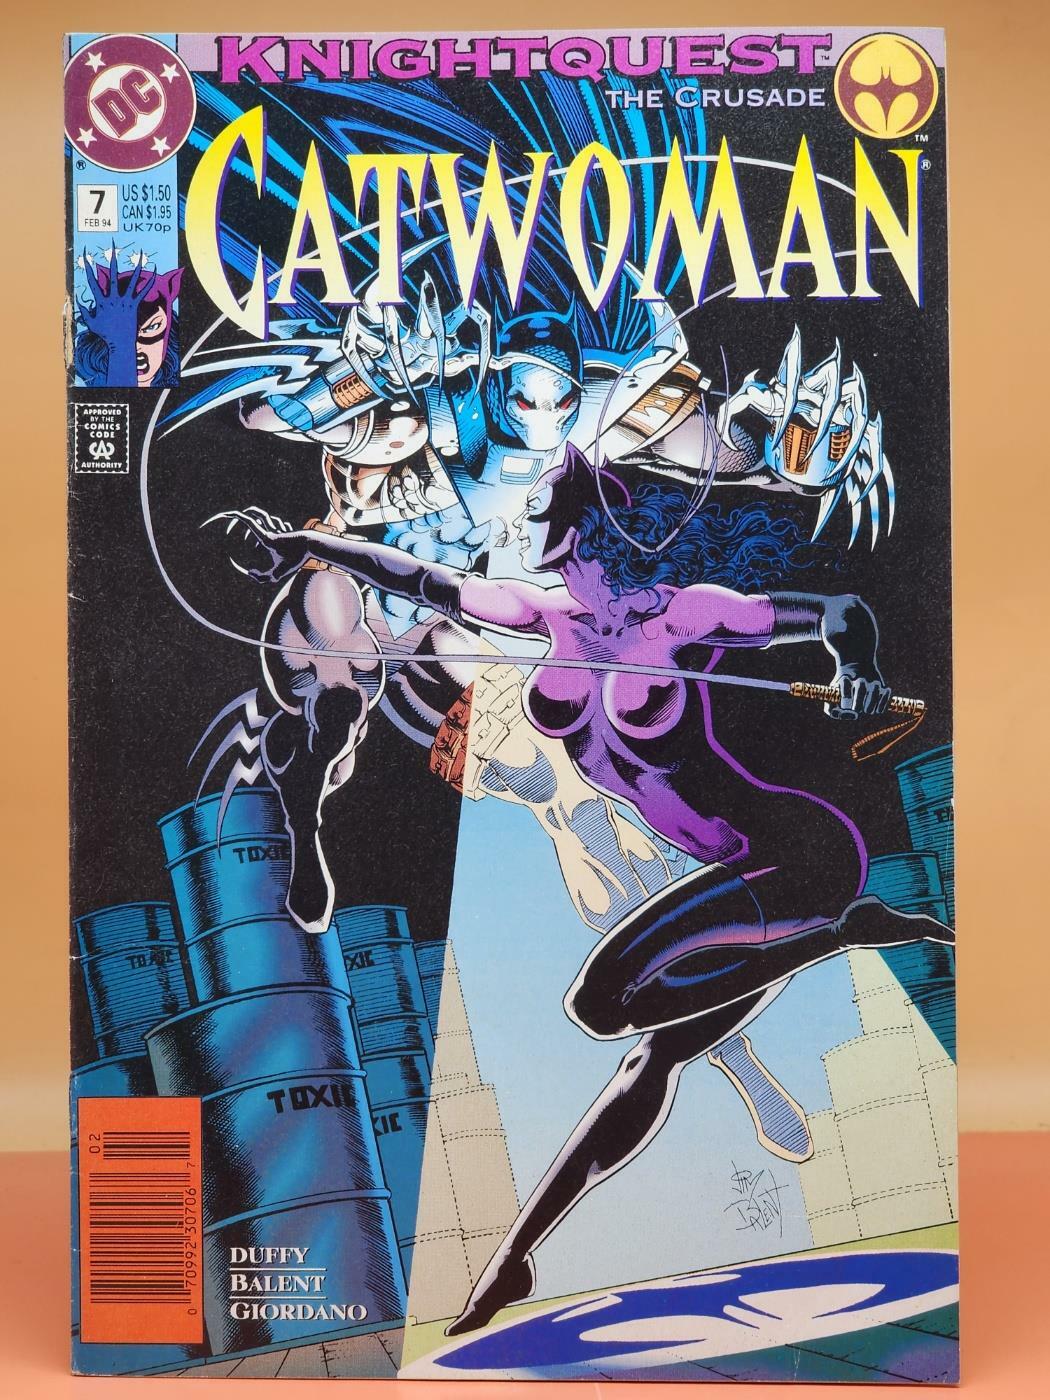 [중고] DC Comics Cat Woman #7 (DC코믹스: 캣우먼) 올컬러만화 원서 (1)